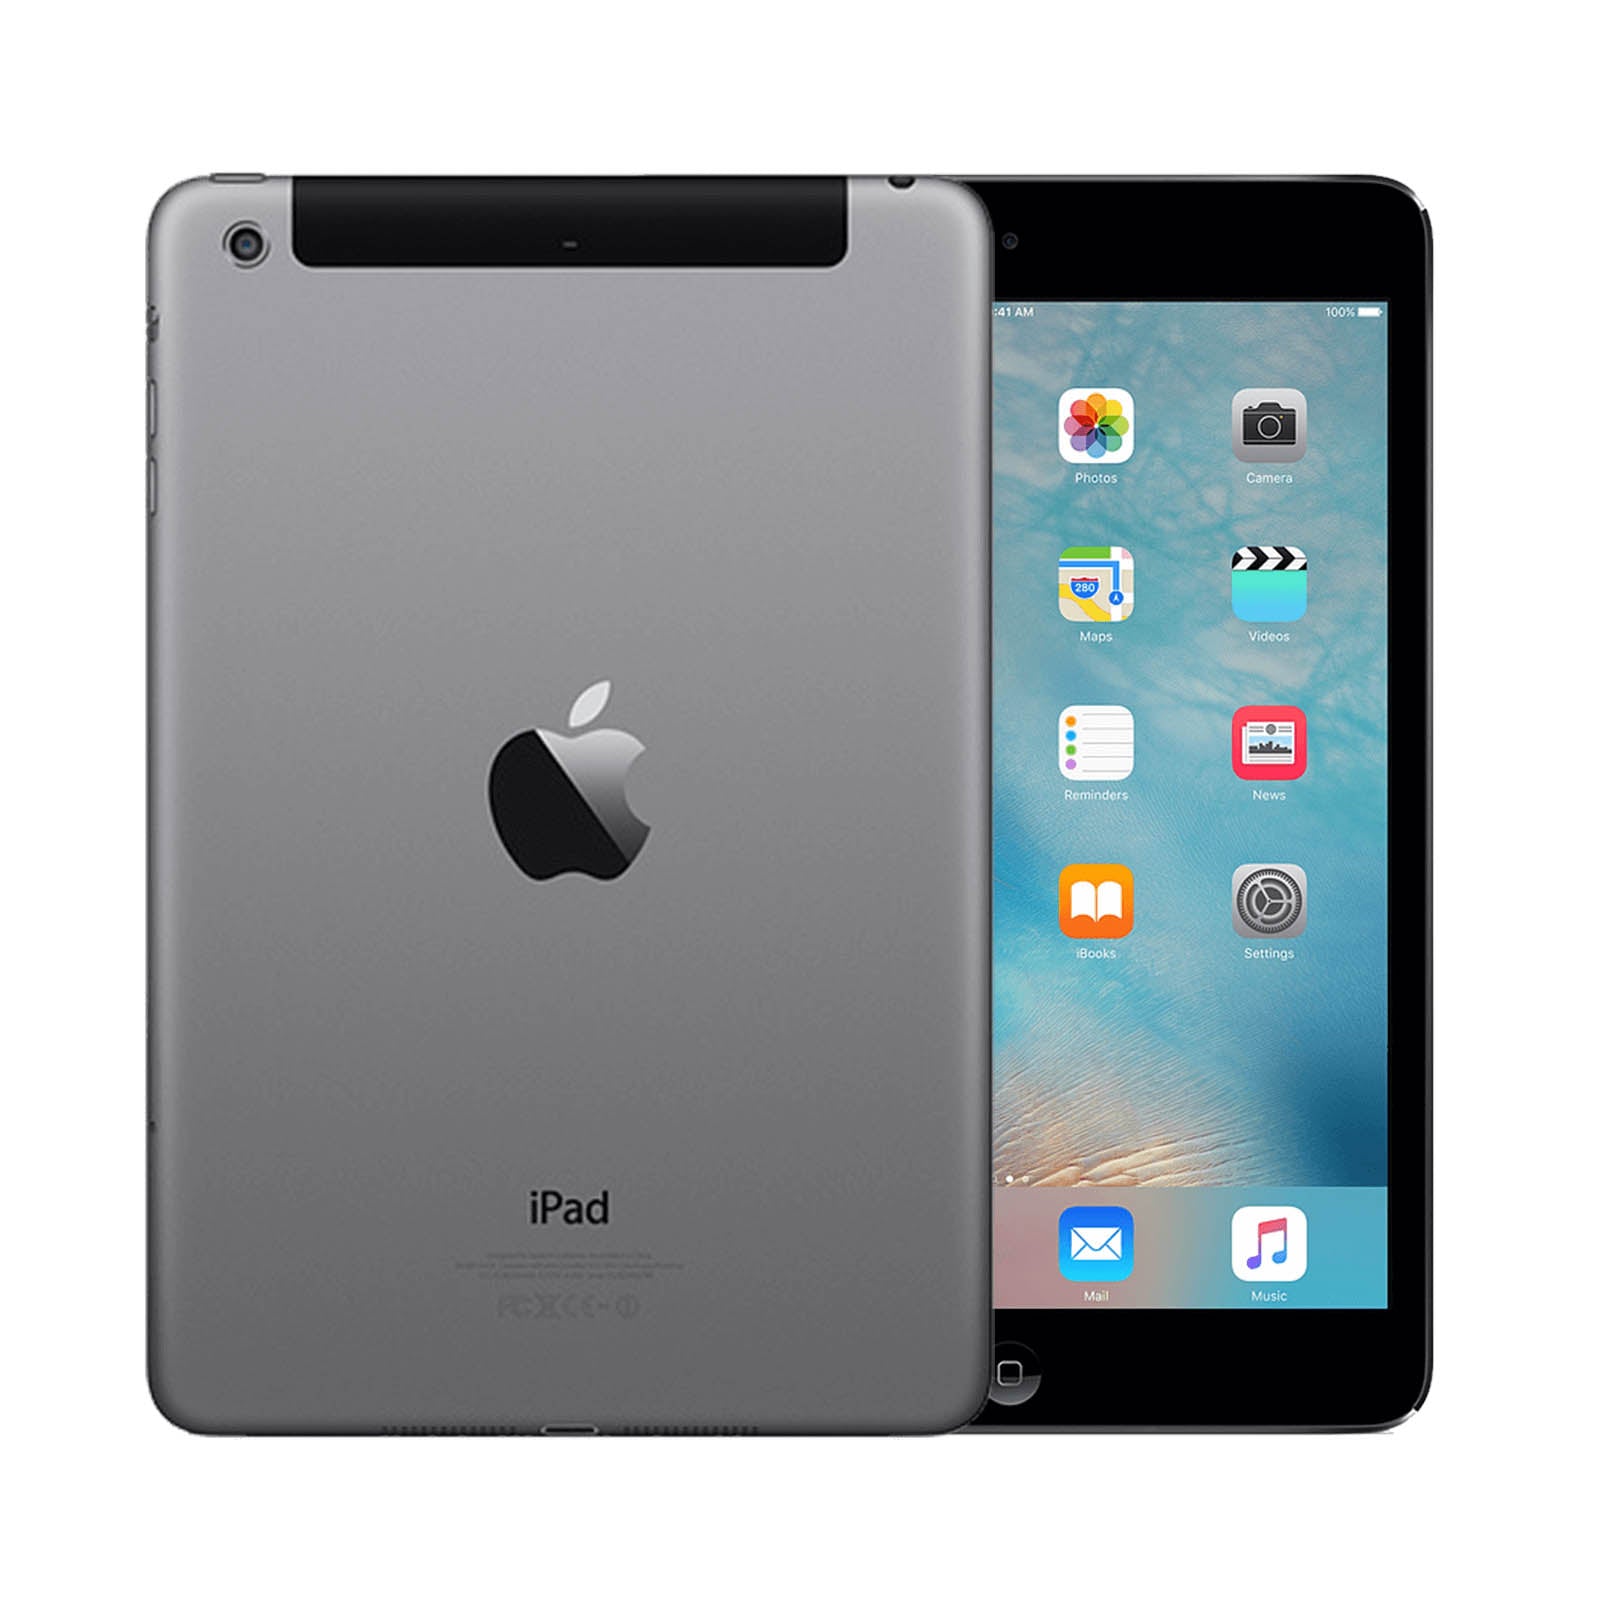 Apple iPad mini 2 16GB Black Very Good - Unlocked